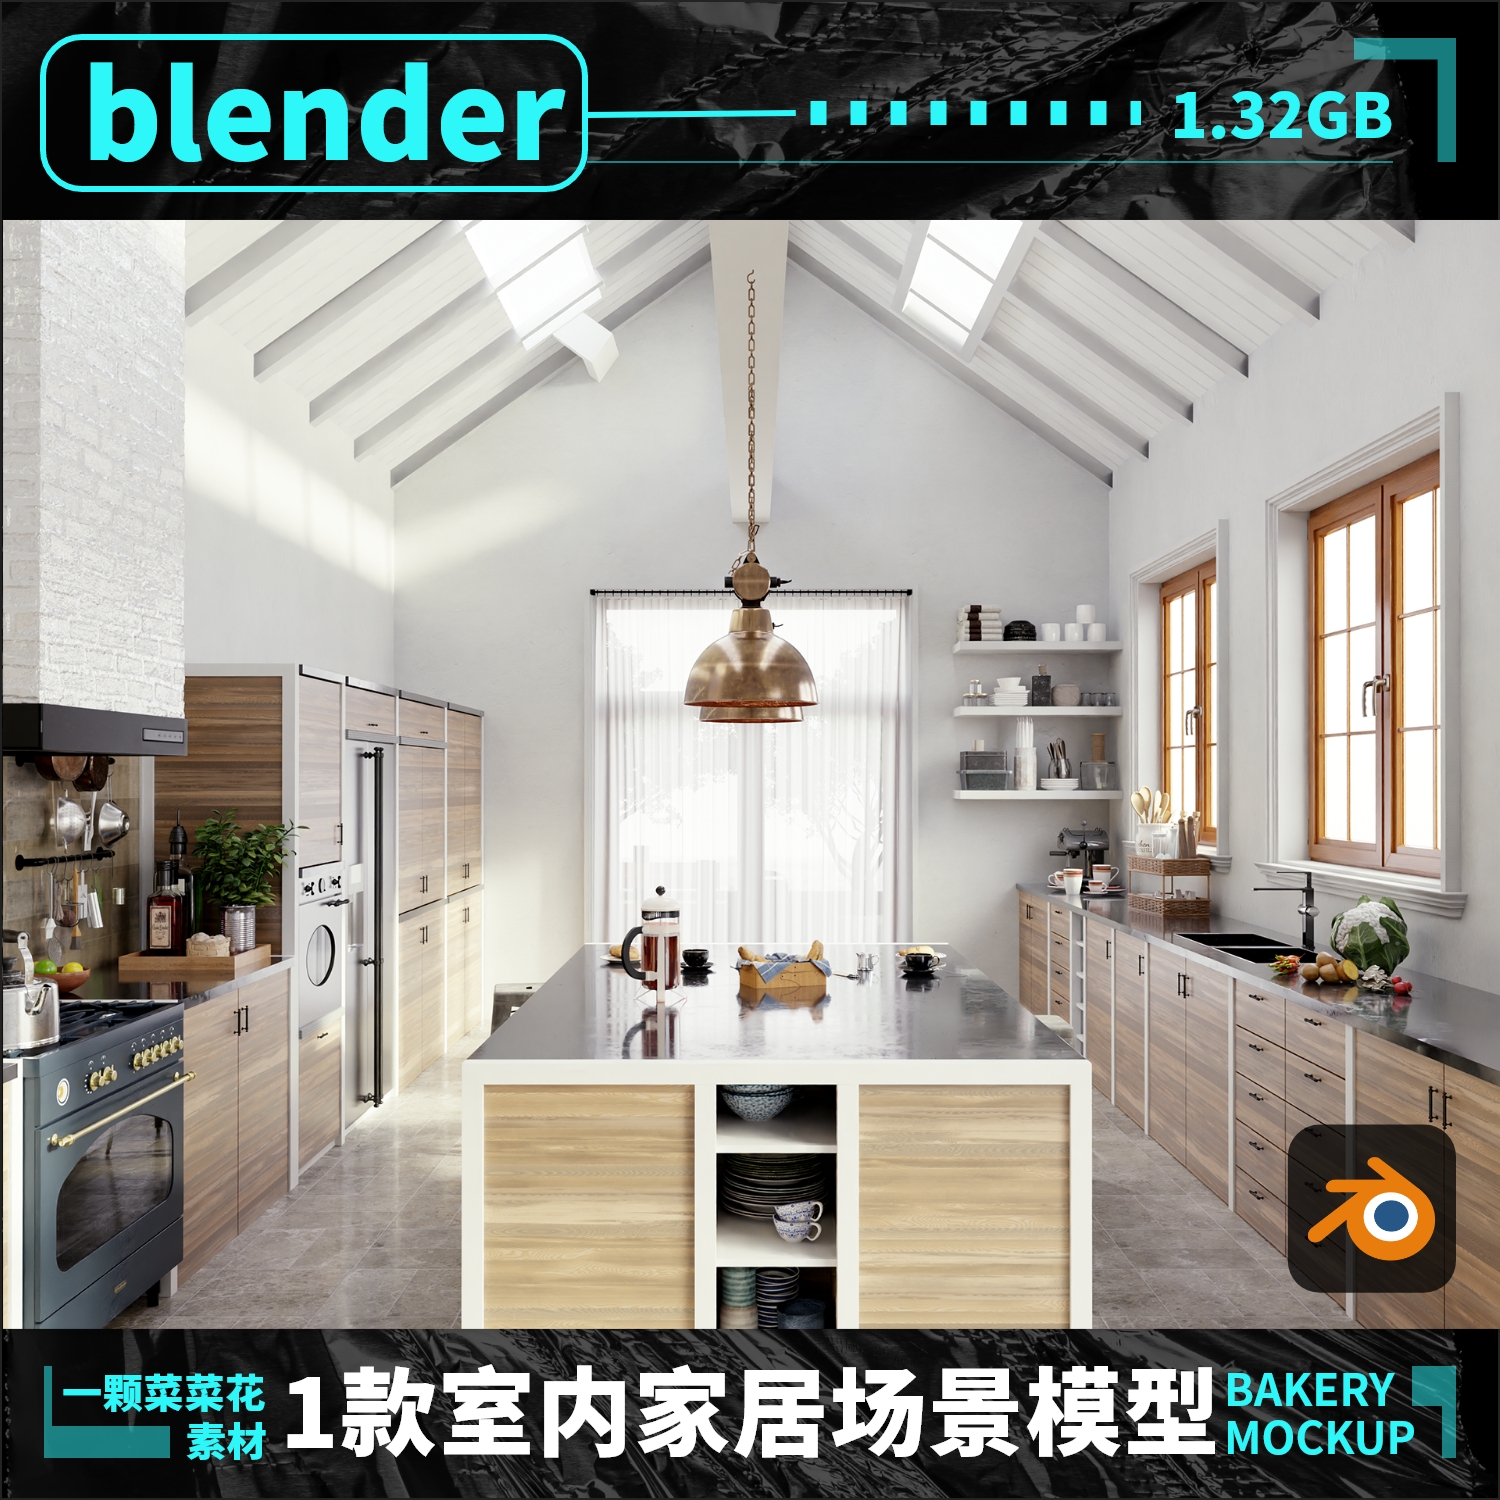 blender欧式室内家居场景模型厨房客厅环境带贴图3D设计素材 A126